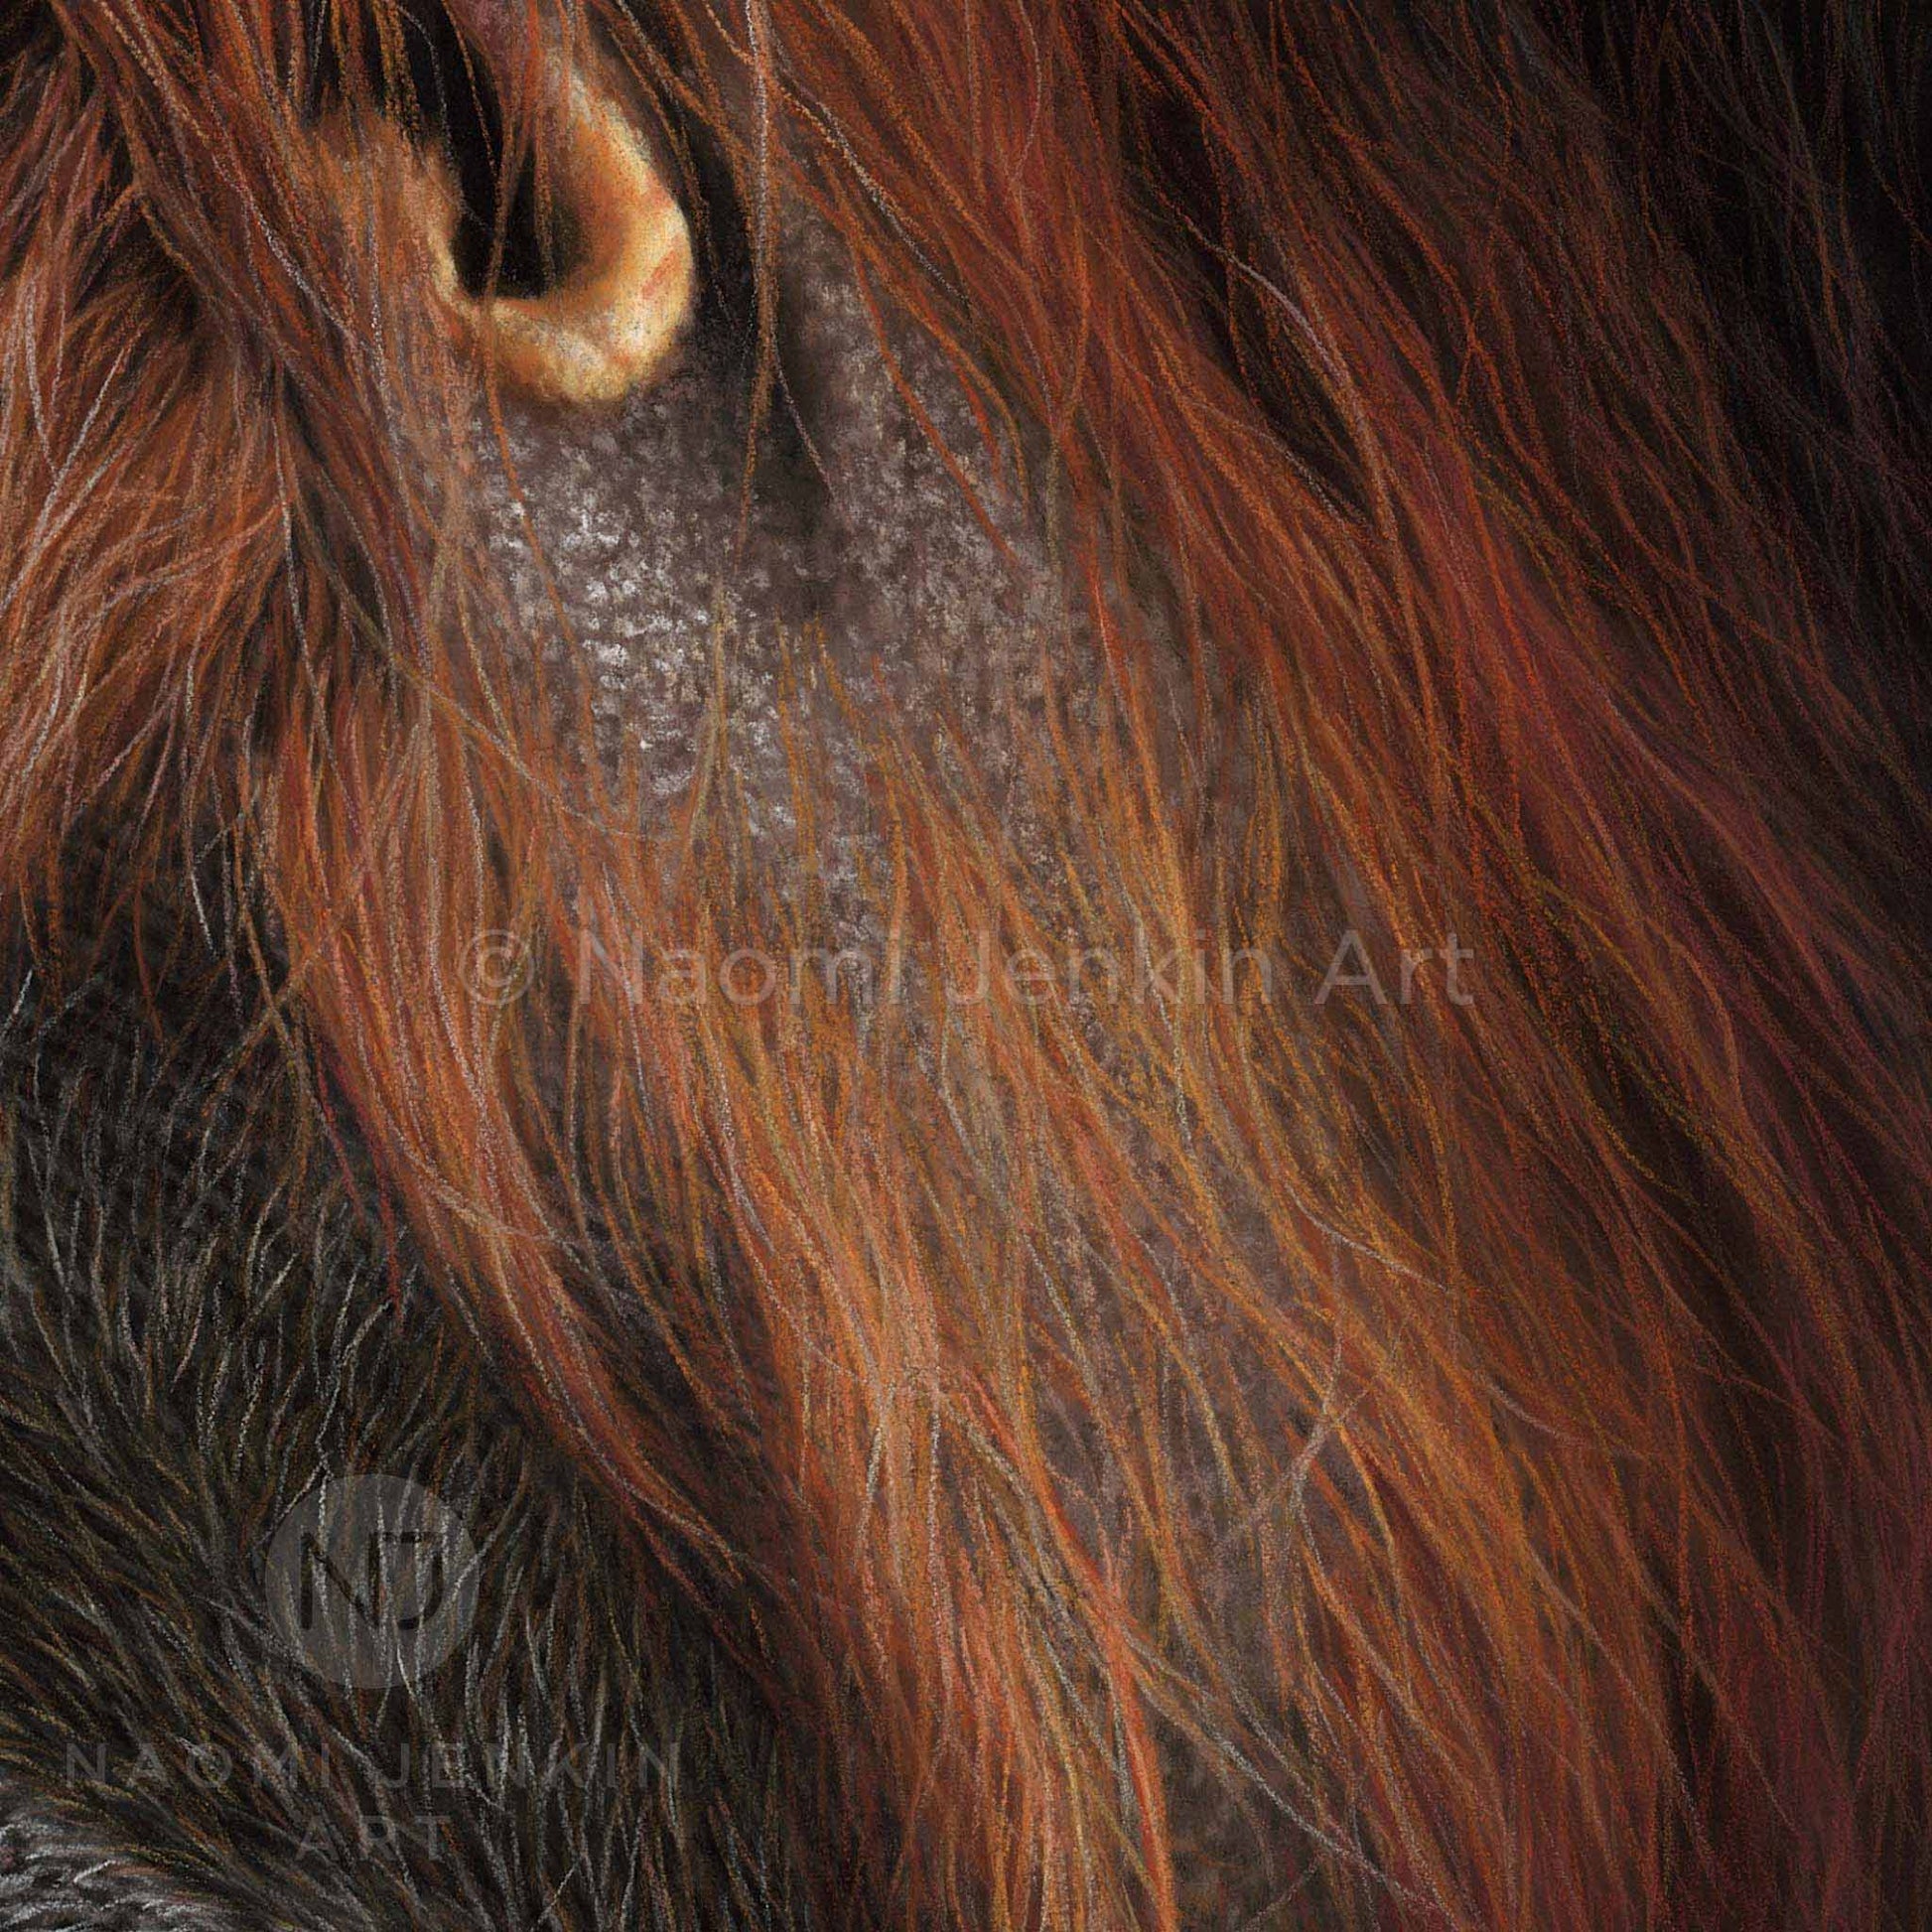 Close up of an orangutan painting by wildlife artist Naomi Jenkin. 